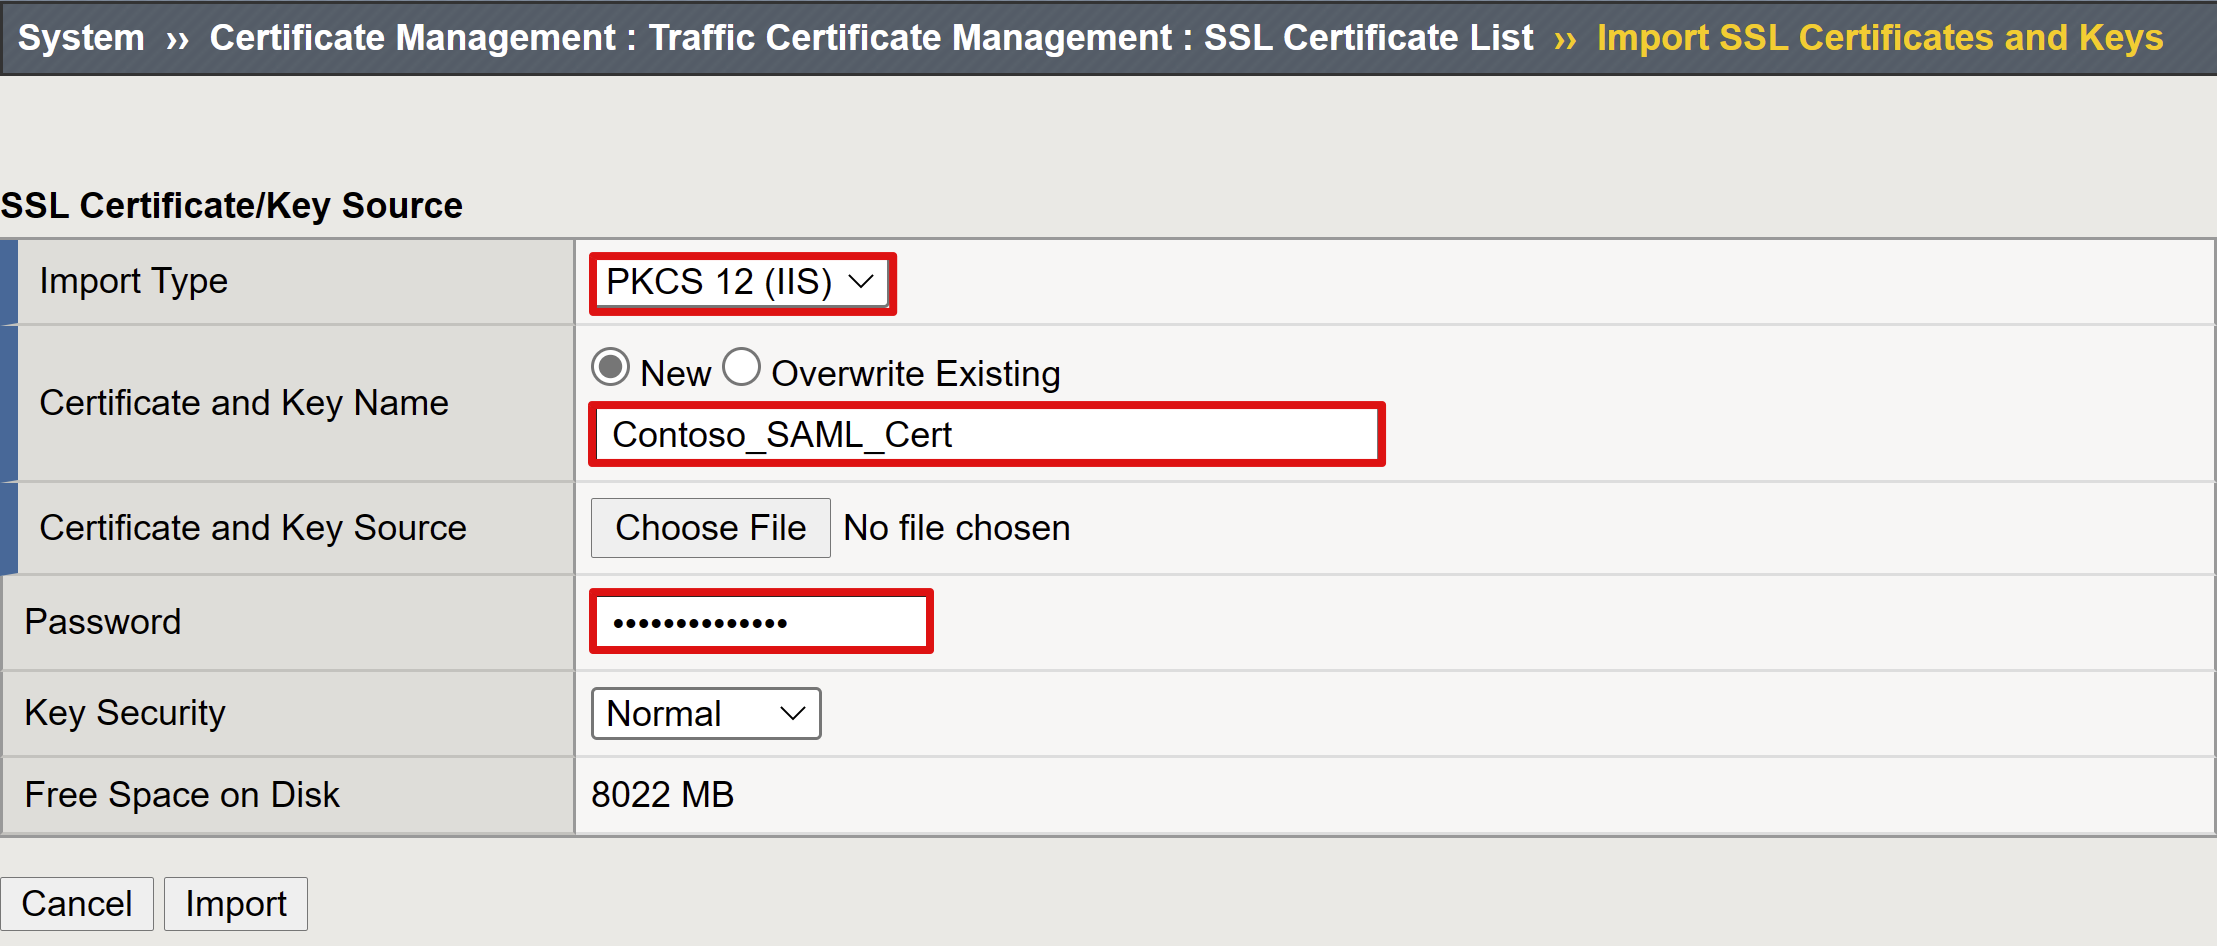 Képernyőkép az SSL-tanúsítványkulcs-forrás kiválasztásáról és bejegyzéséről.